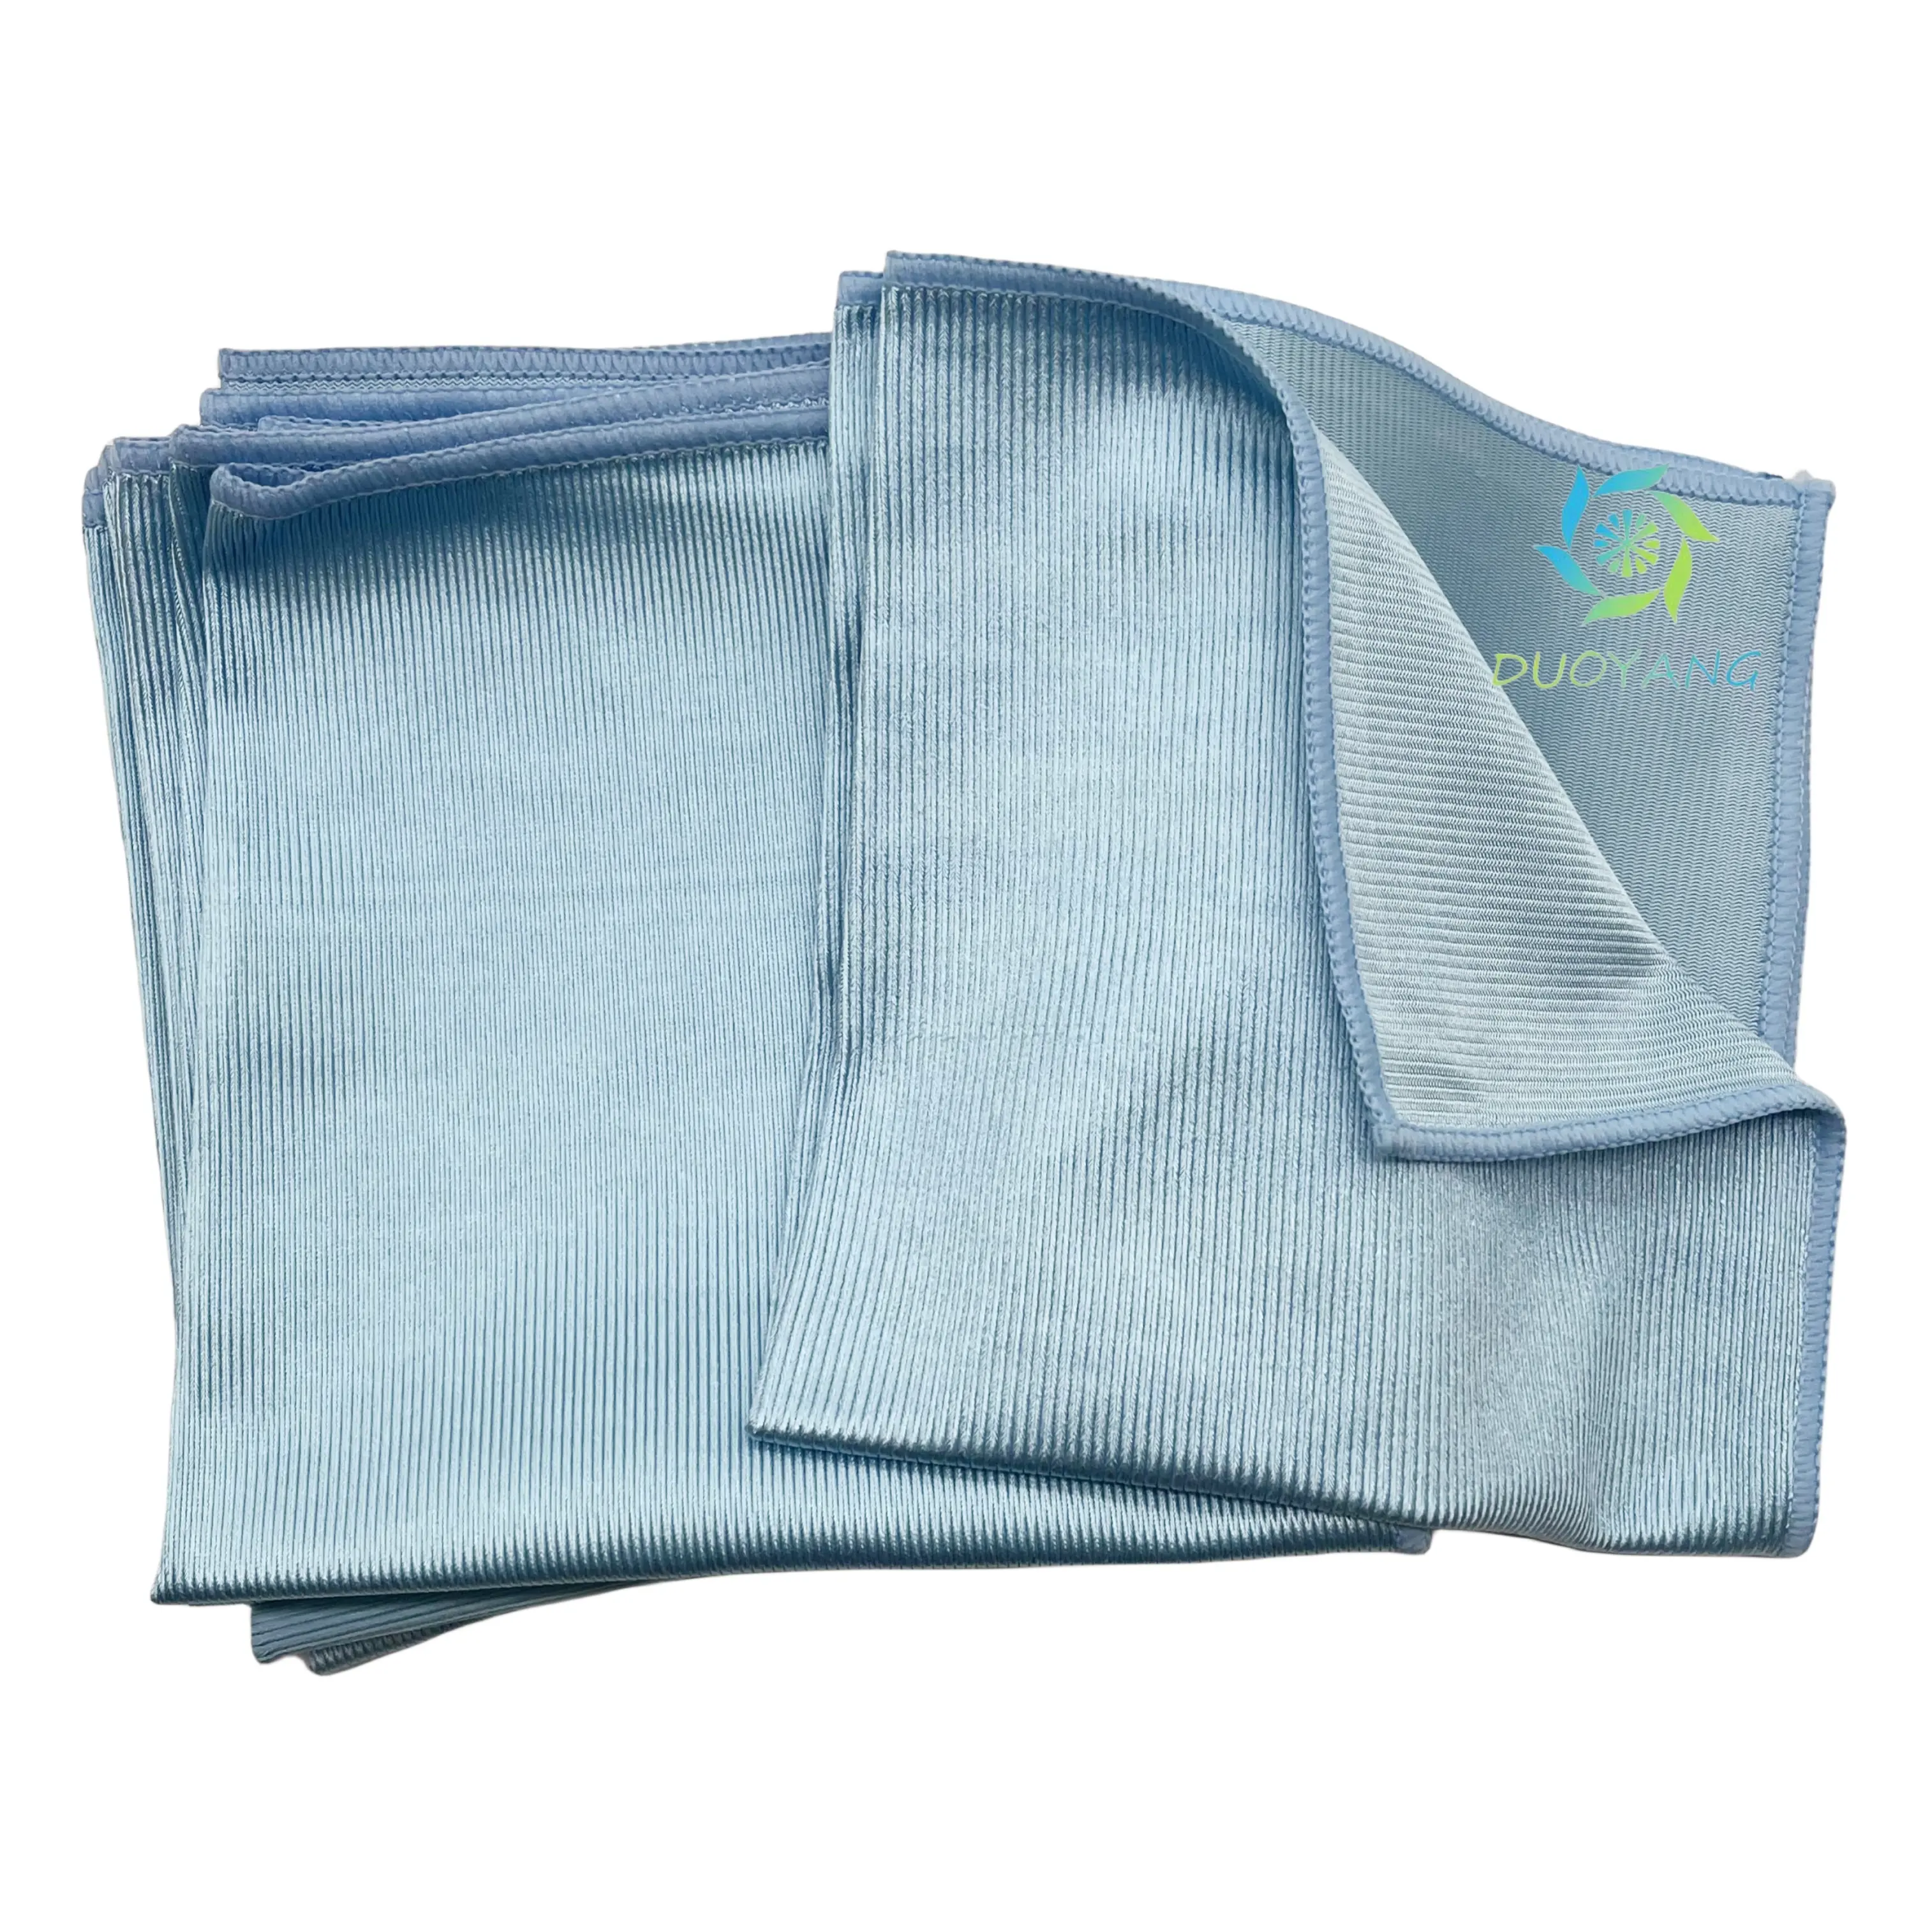 窓拭き用のぼろ布とタオルは、ガラス研磨用のプライベートラベルの縞のないマイクロファイバー窓布を提供します